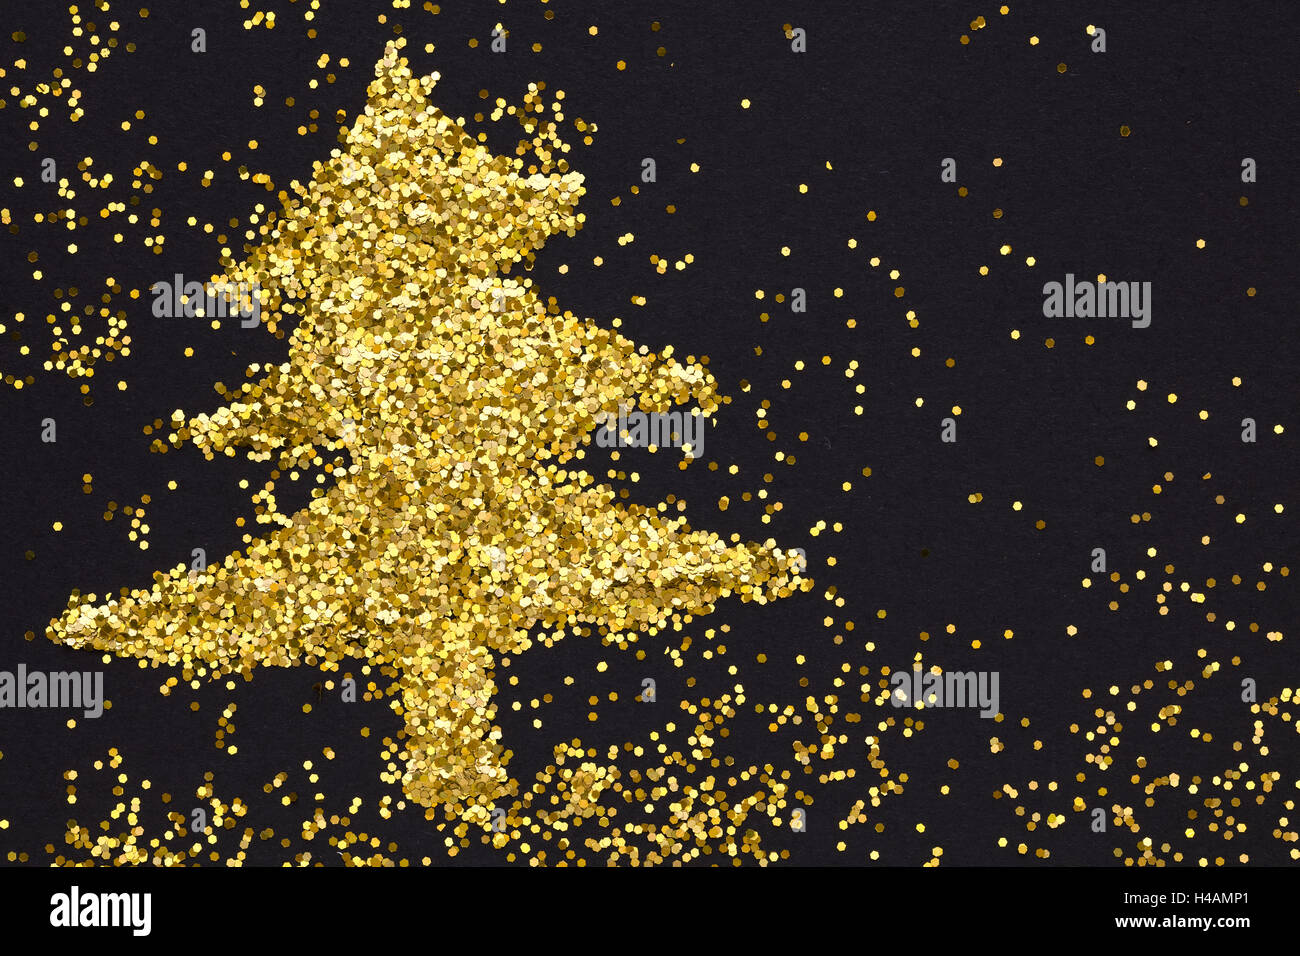 Árbol de navidad de lentejuelas de oro,fondo negro Foto de stock